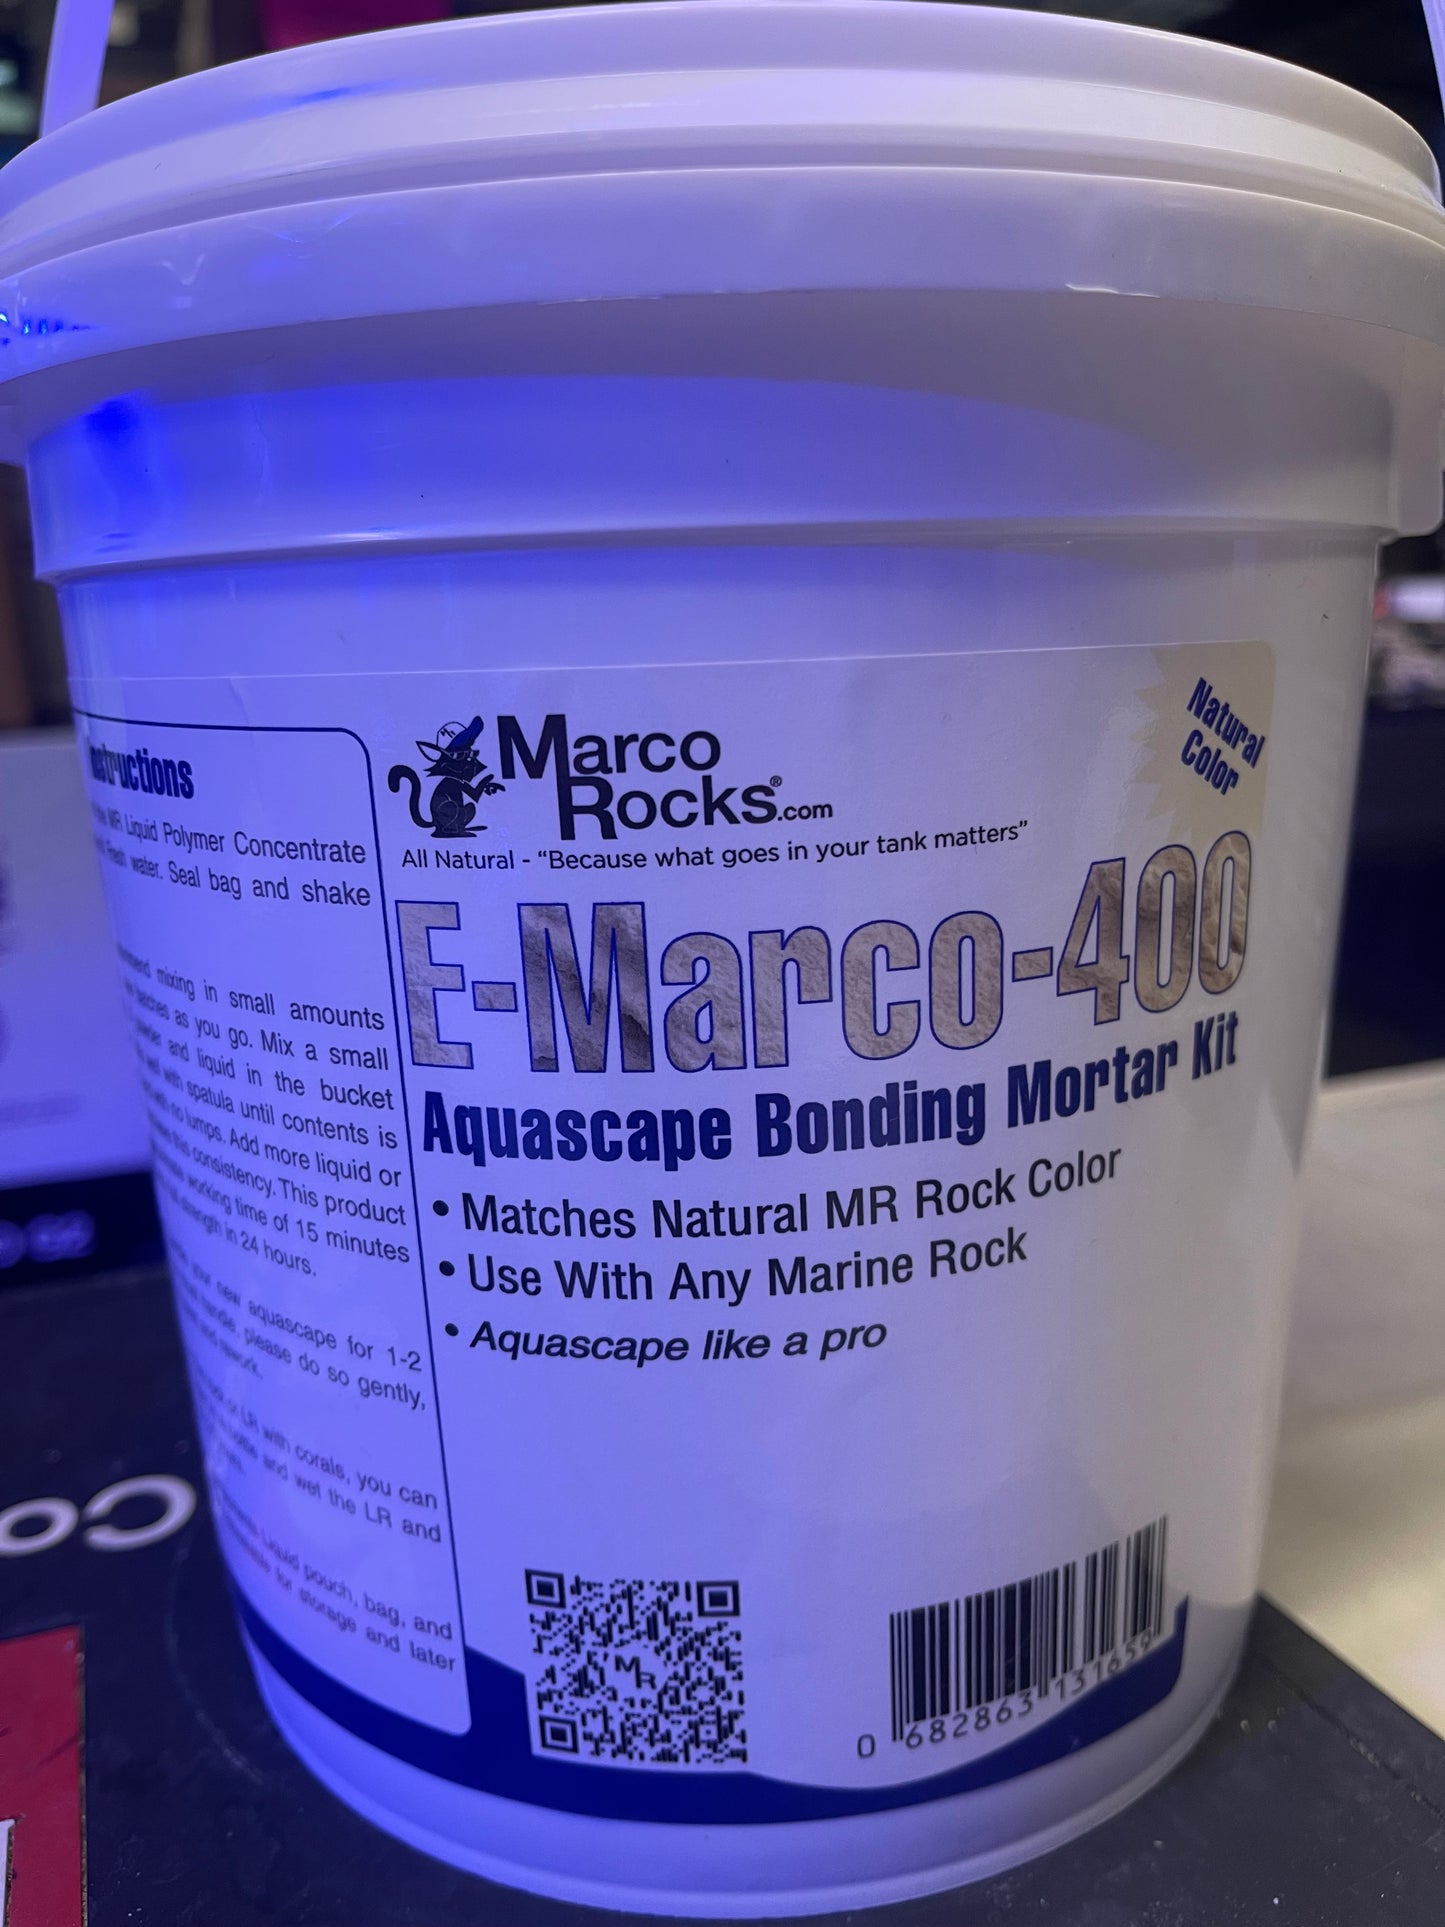 E-Marco-400 Aquascape Bonding Mortar Kit